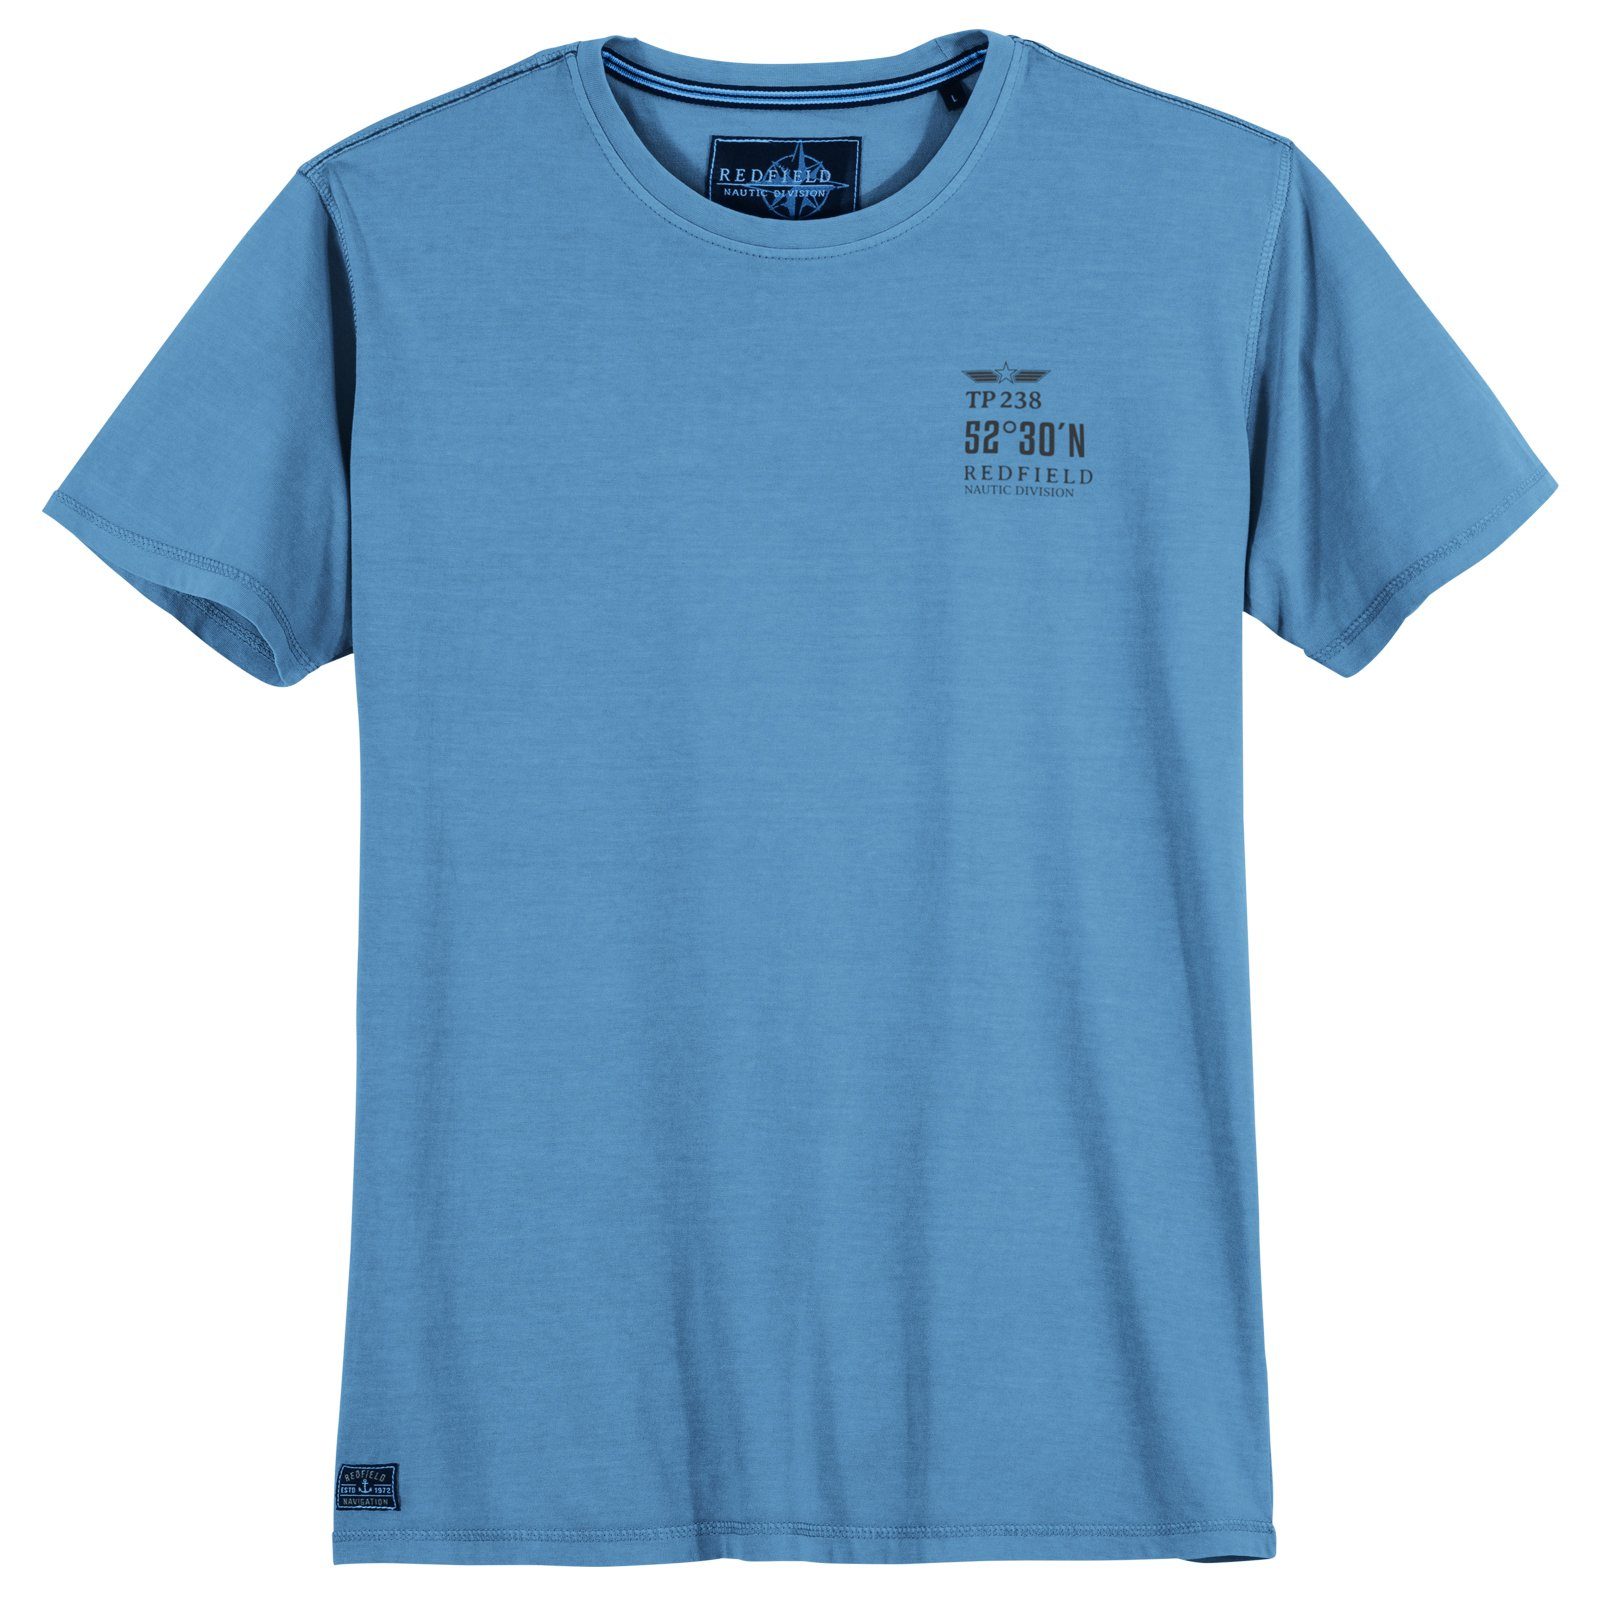 Redfield Herren Größen redfield T-Shirt himmelblau Print-Shirt Große Vintage